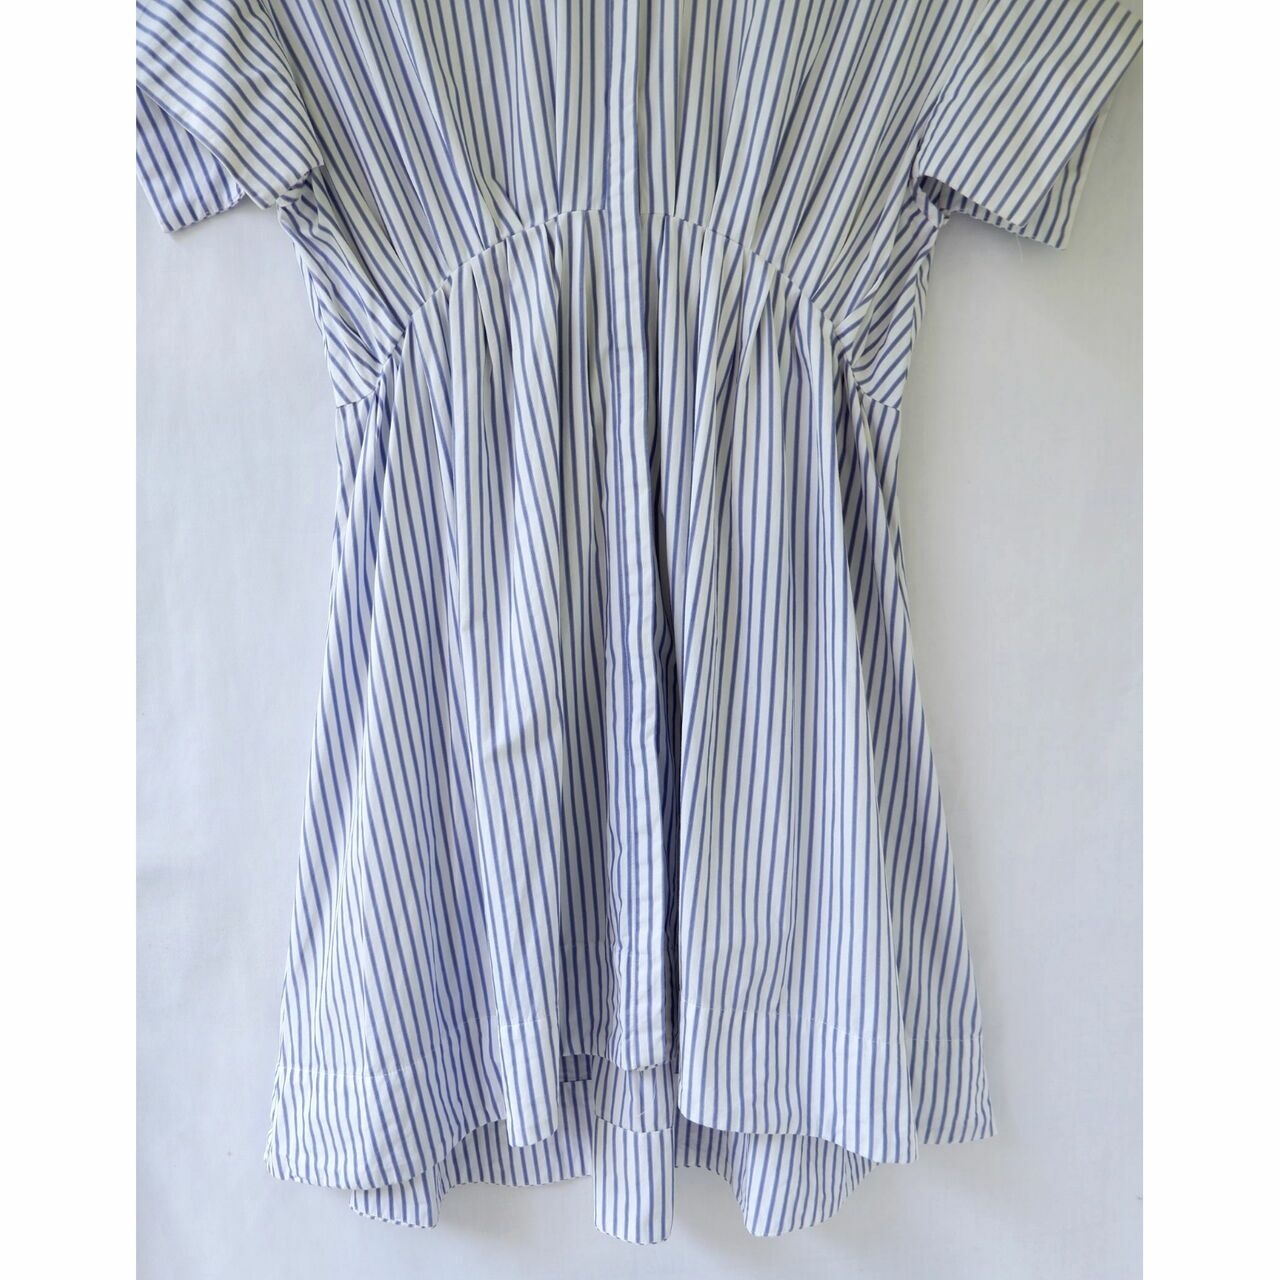 Victoria Beckham For Target White Stripes Midi Dress